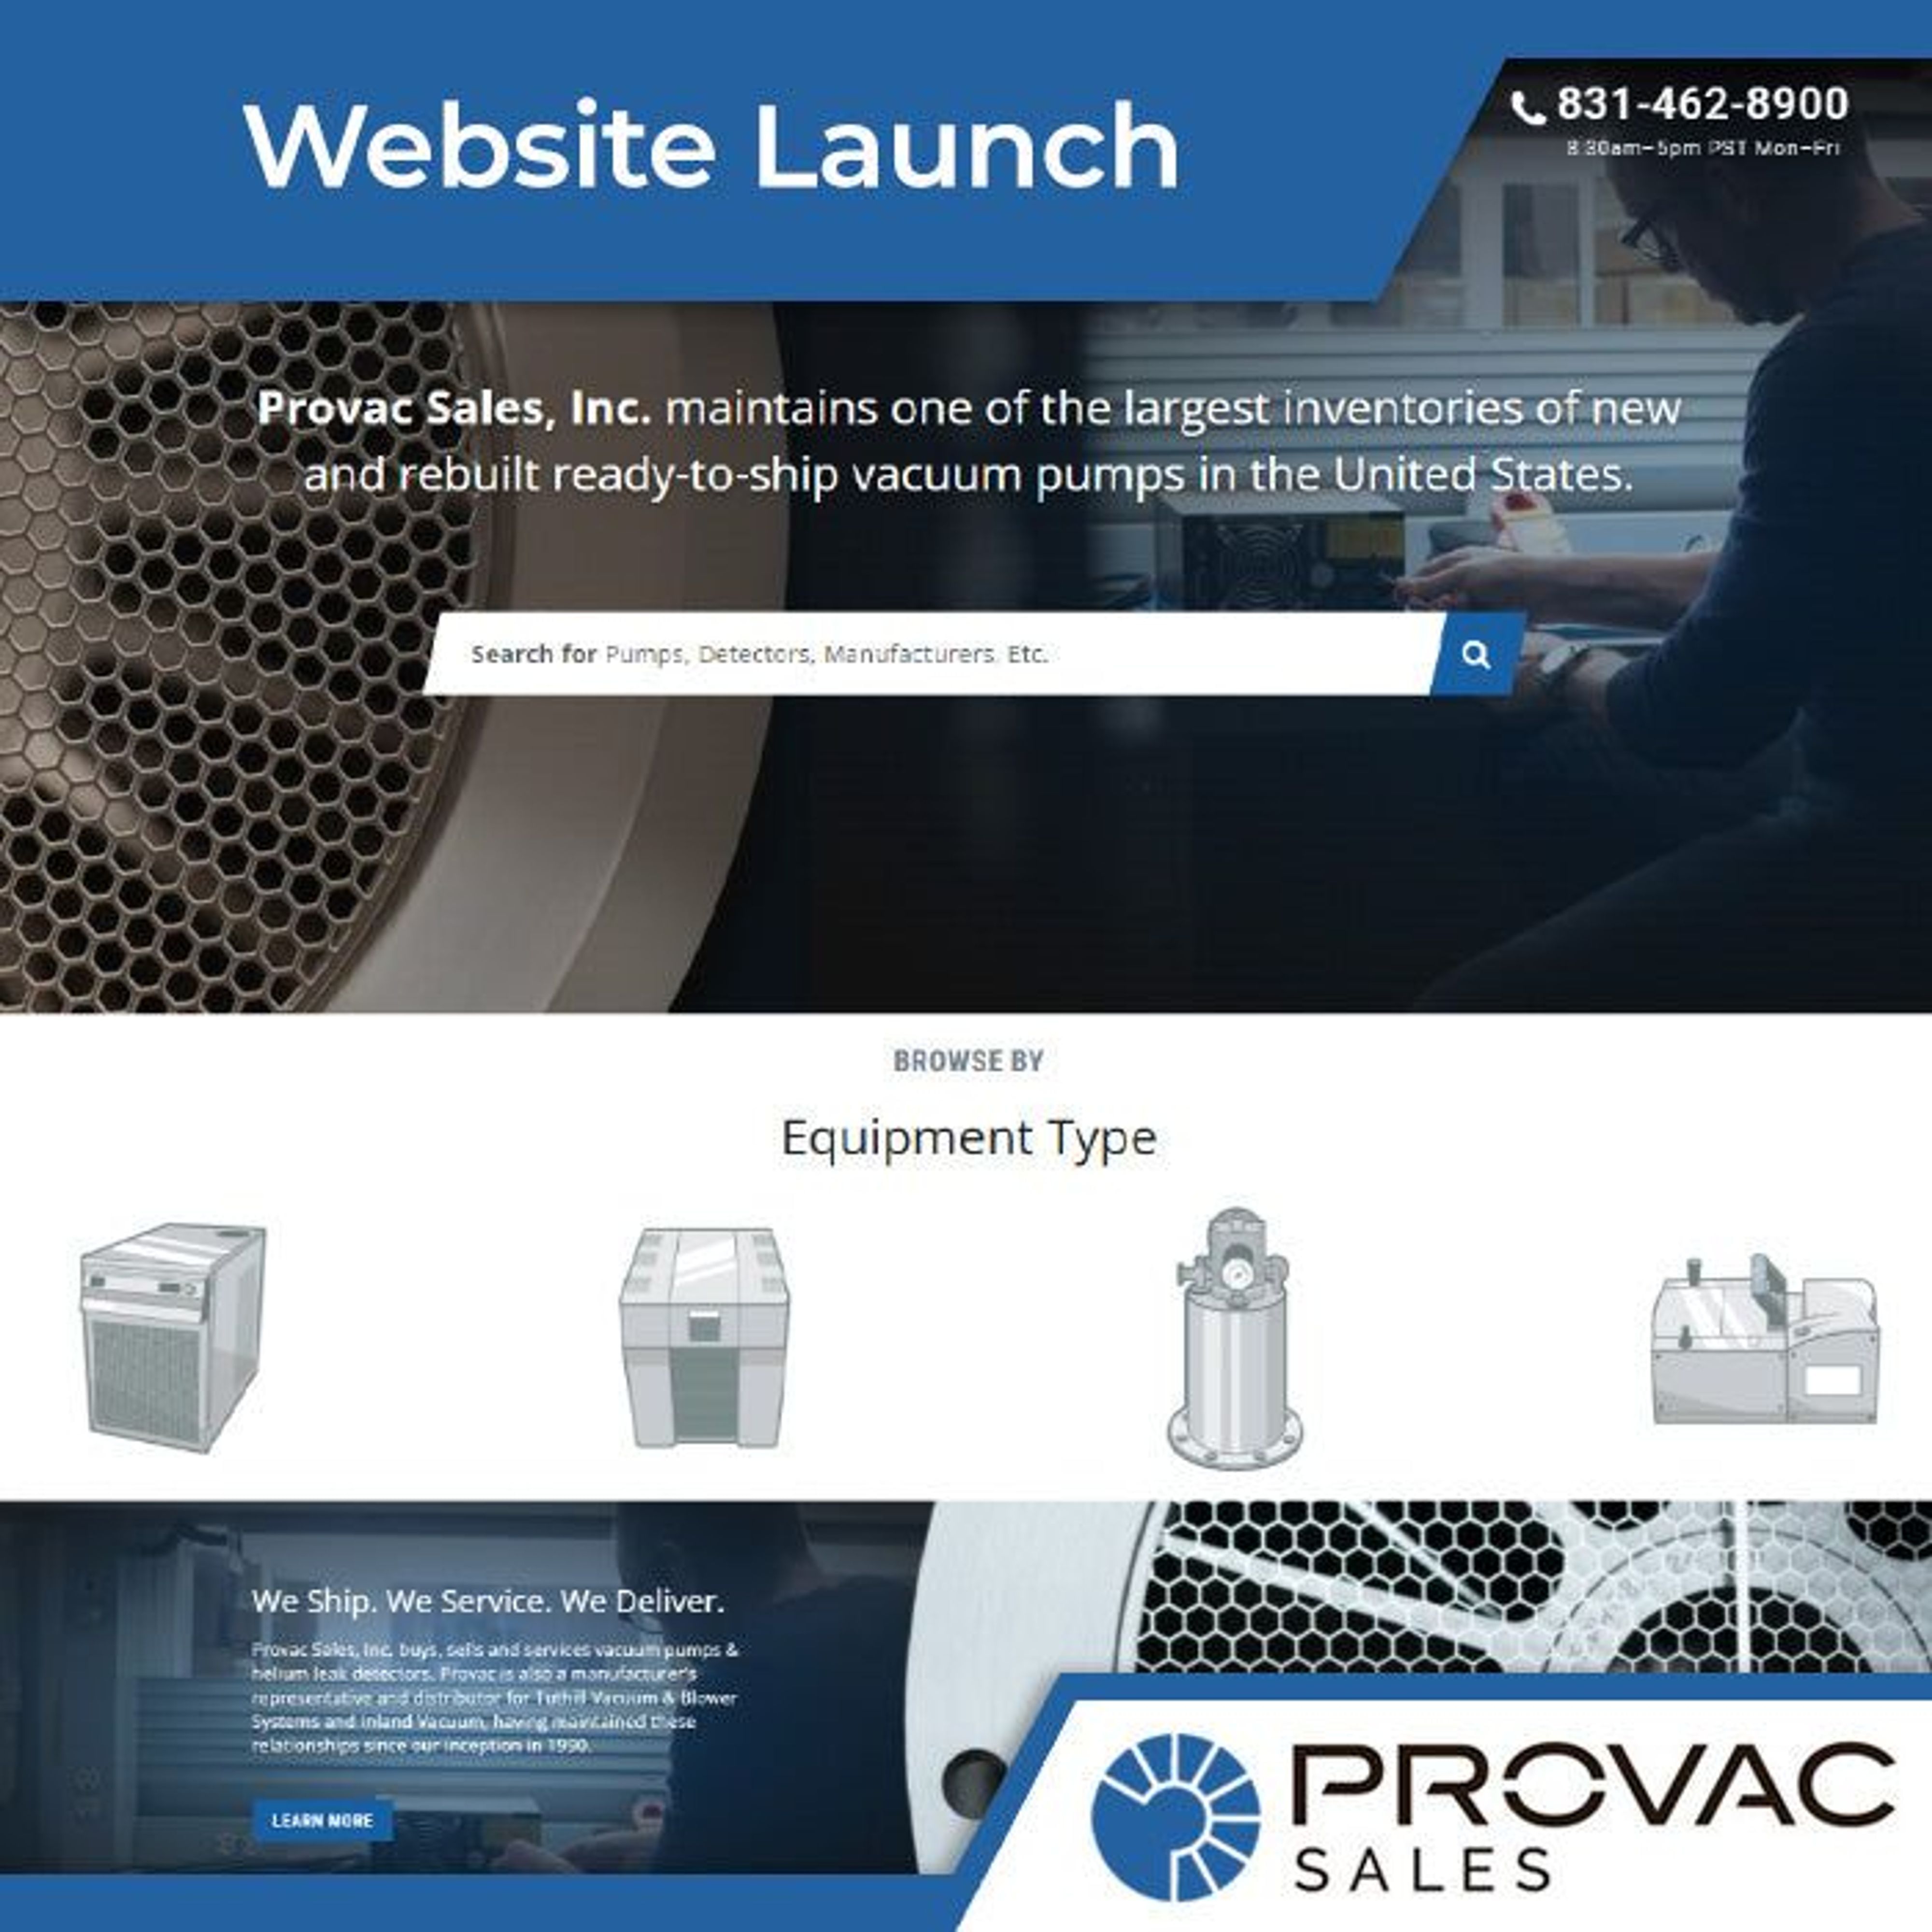 Provac Sales, Inc. Announces Website Launch Background